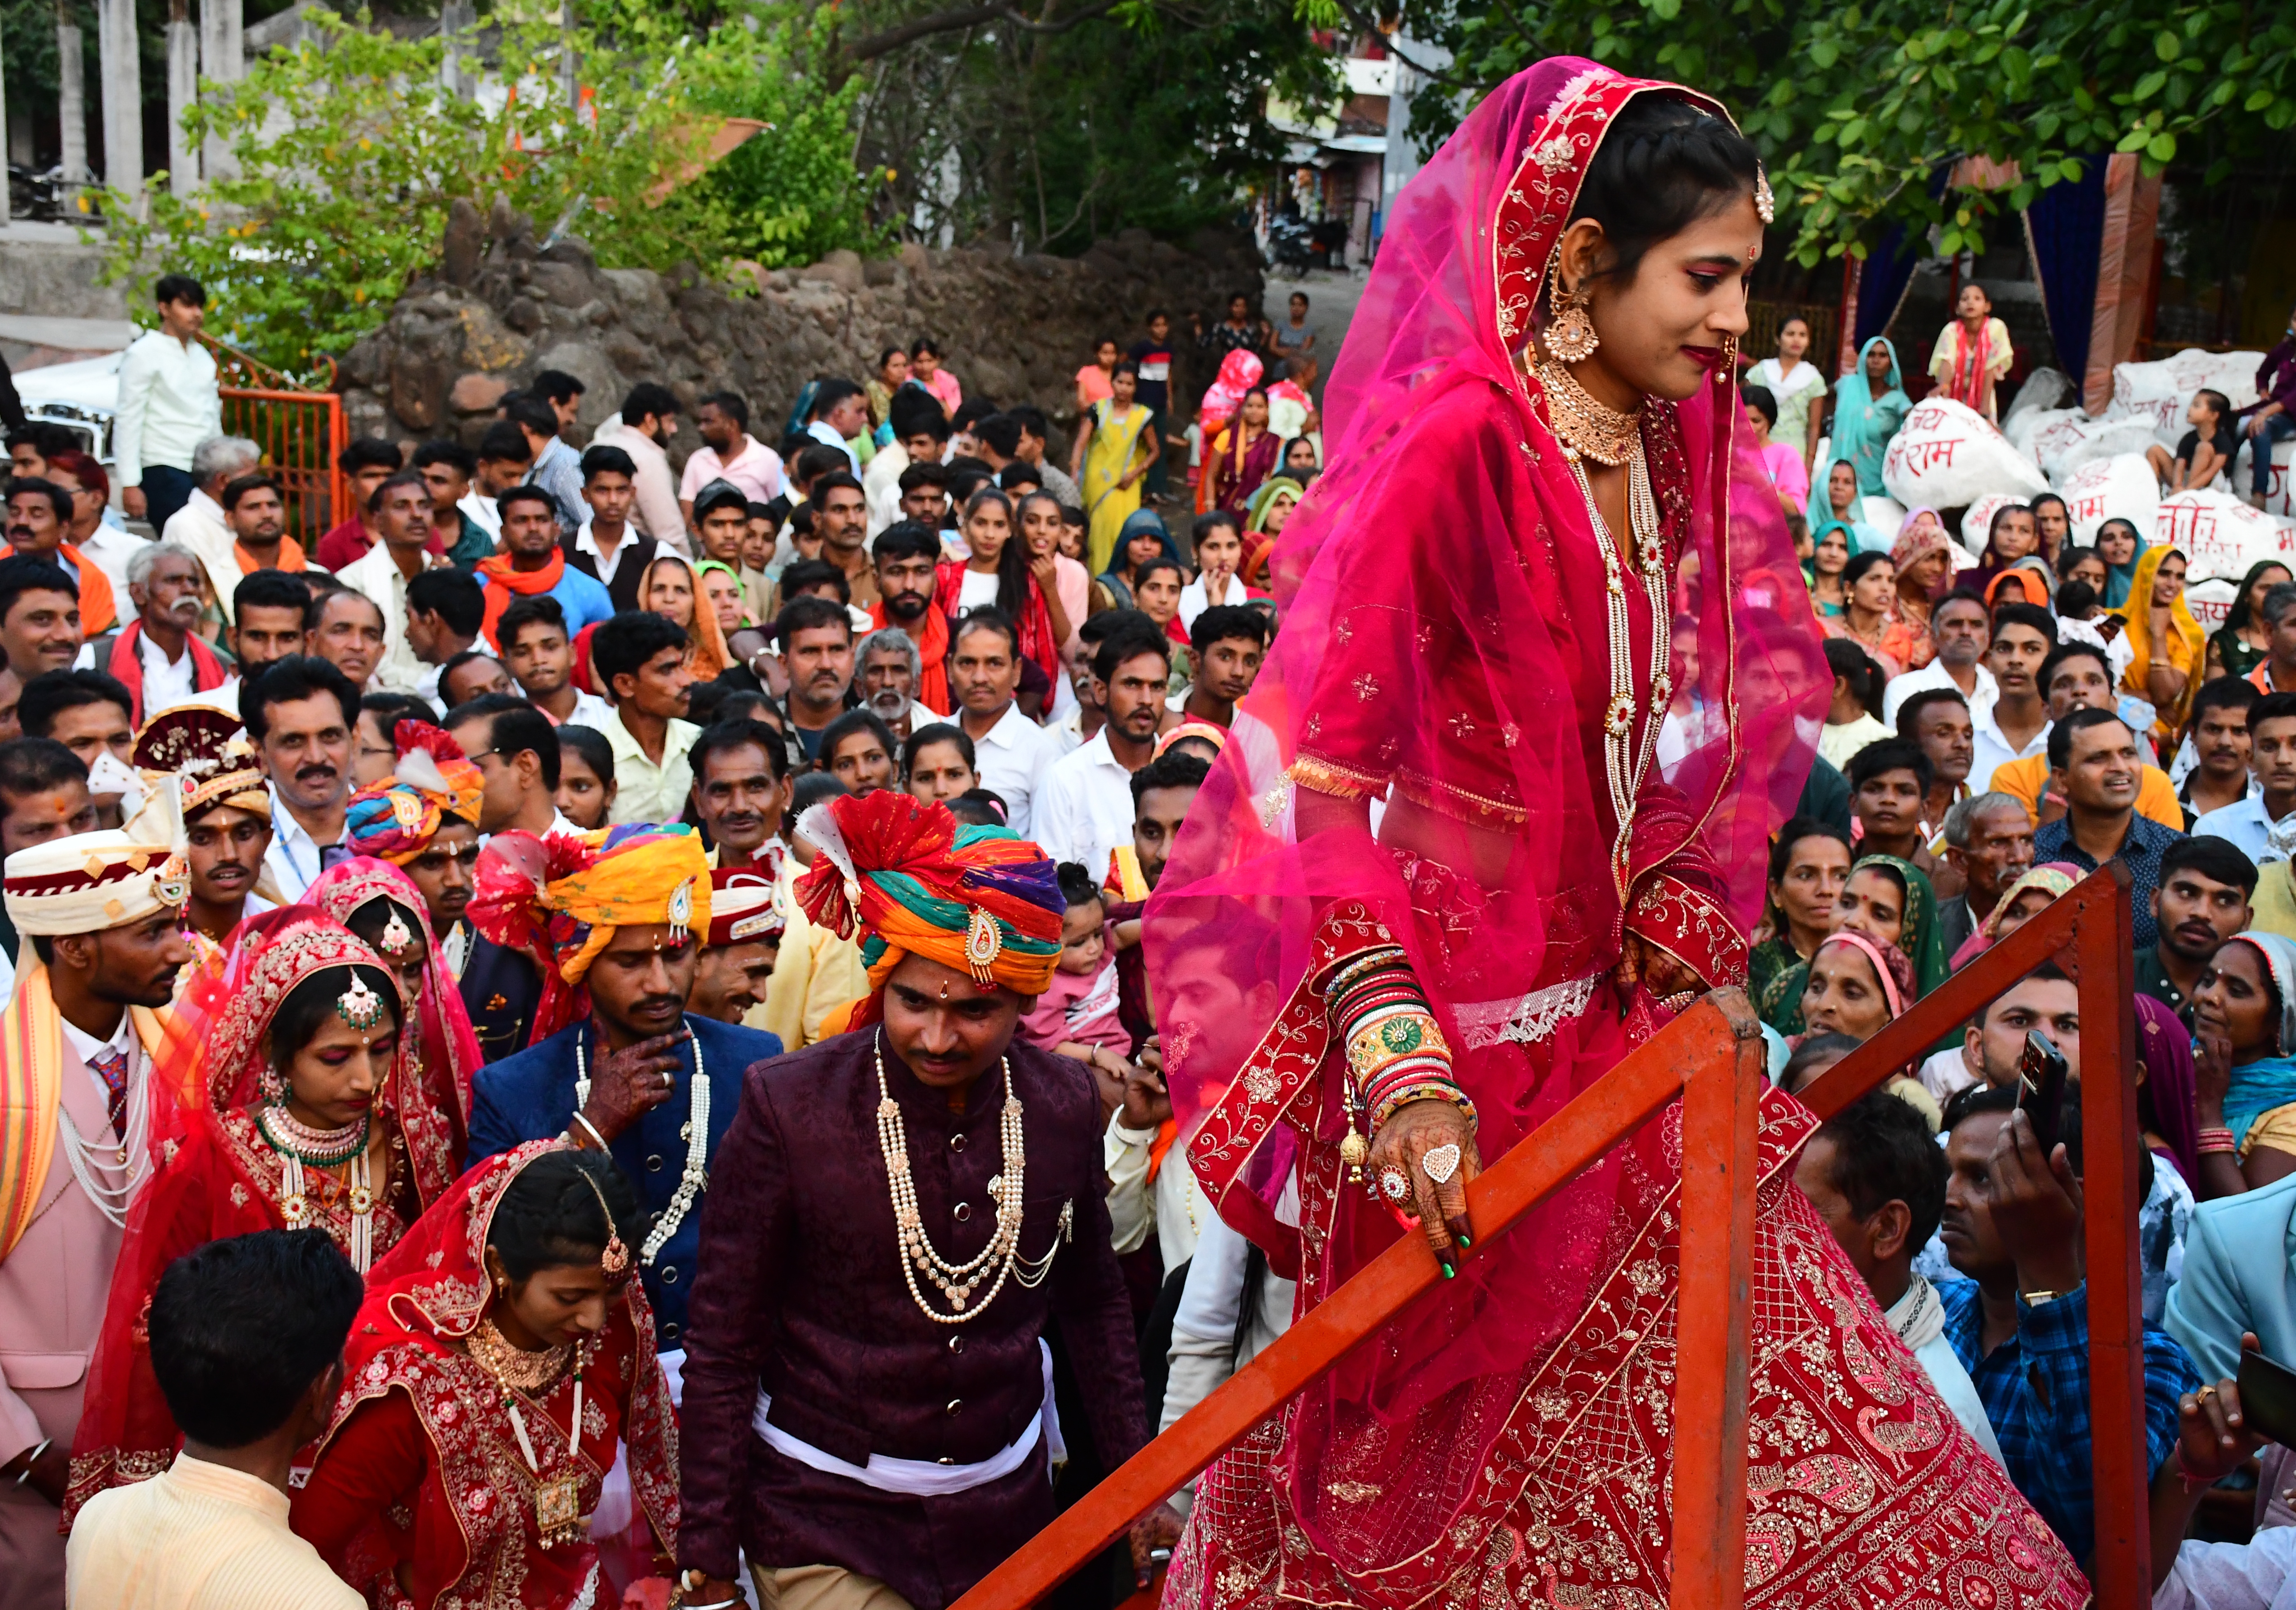 अक्षय तृतीया पर अखिल भारतीय पाल समाज का आदर्श सामूहिक विवाह सम्मेलन में 18 जोड़ो
की शादी - image